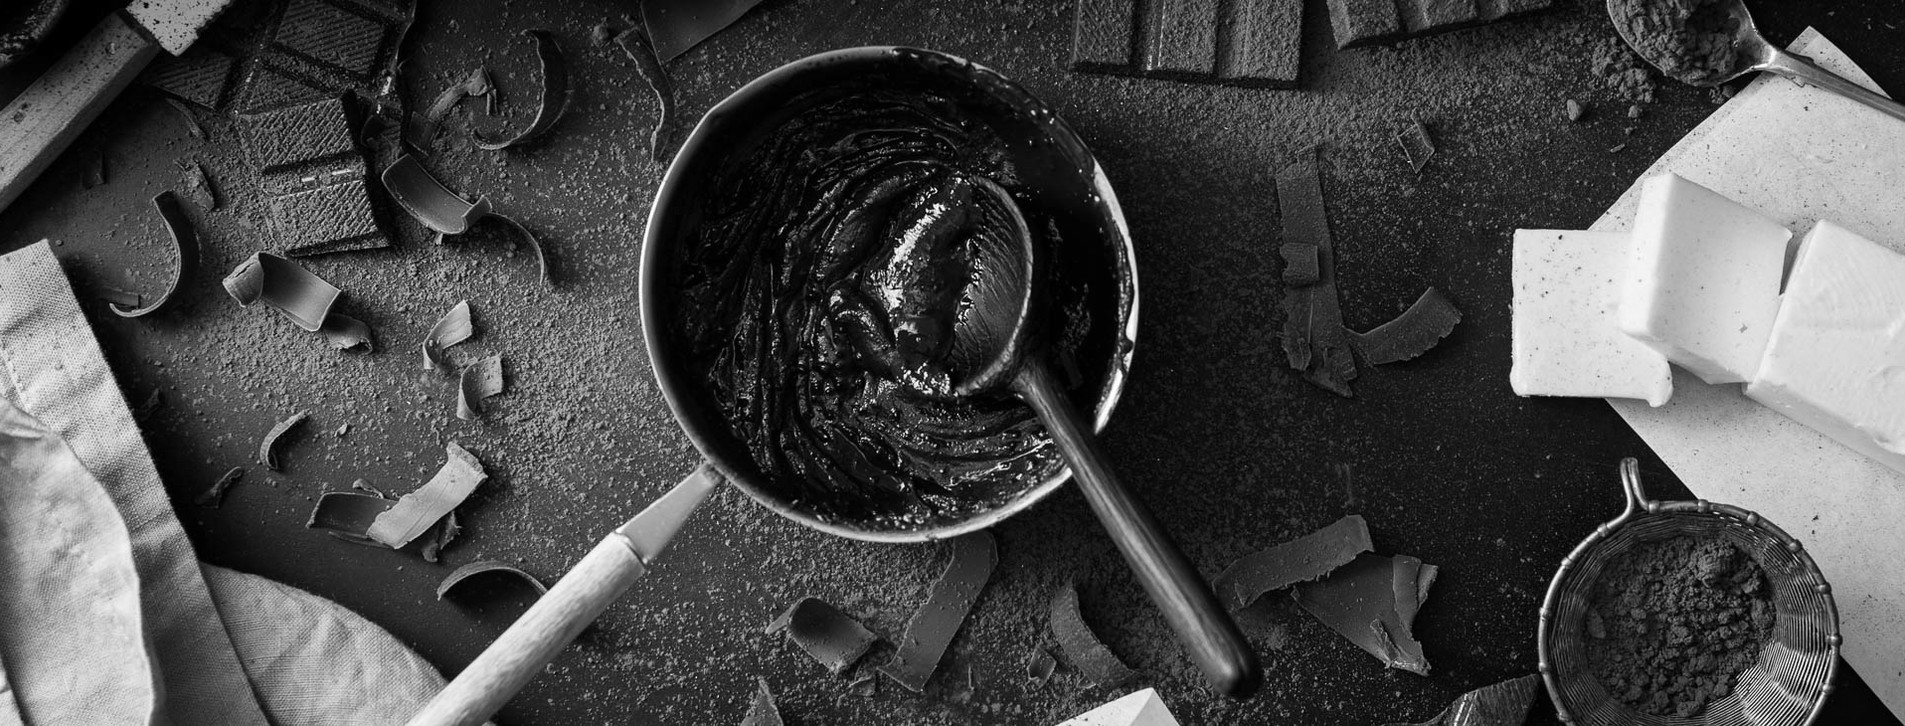 Фото 1 - Урок приготовления шоколада для двоих